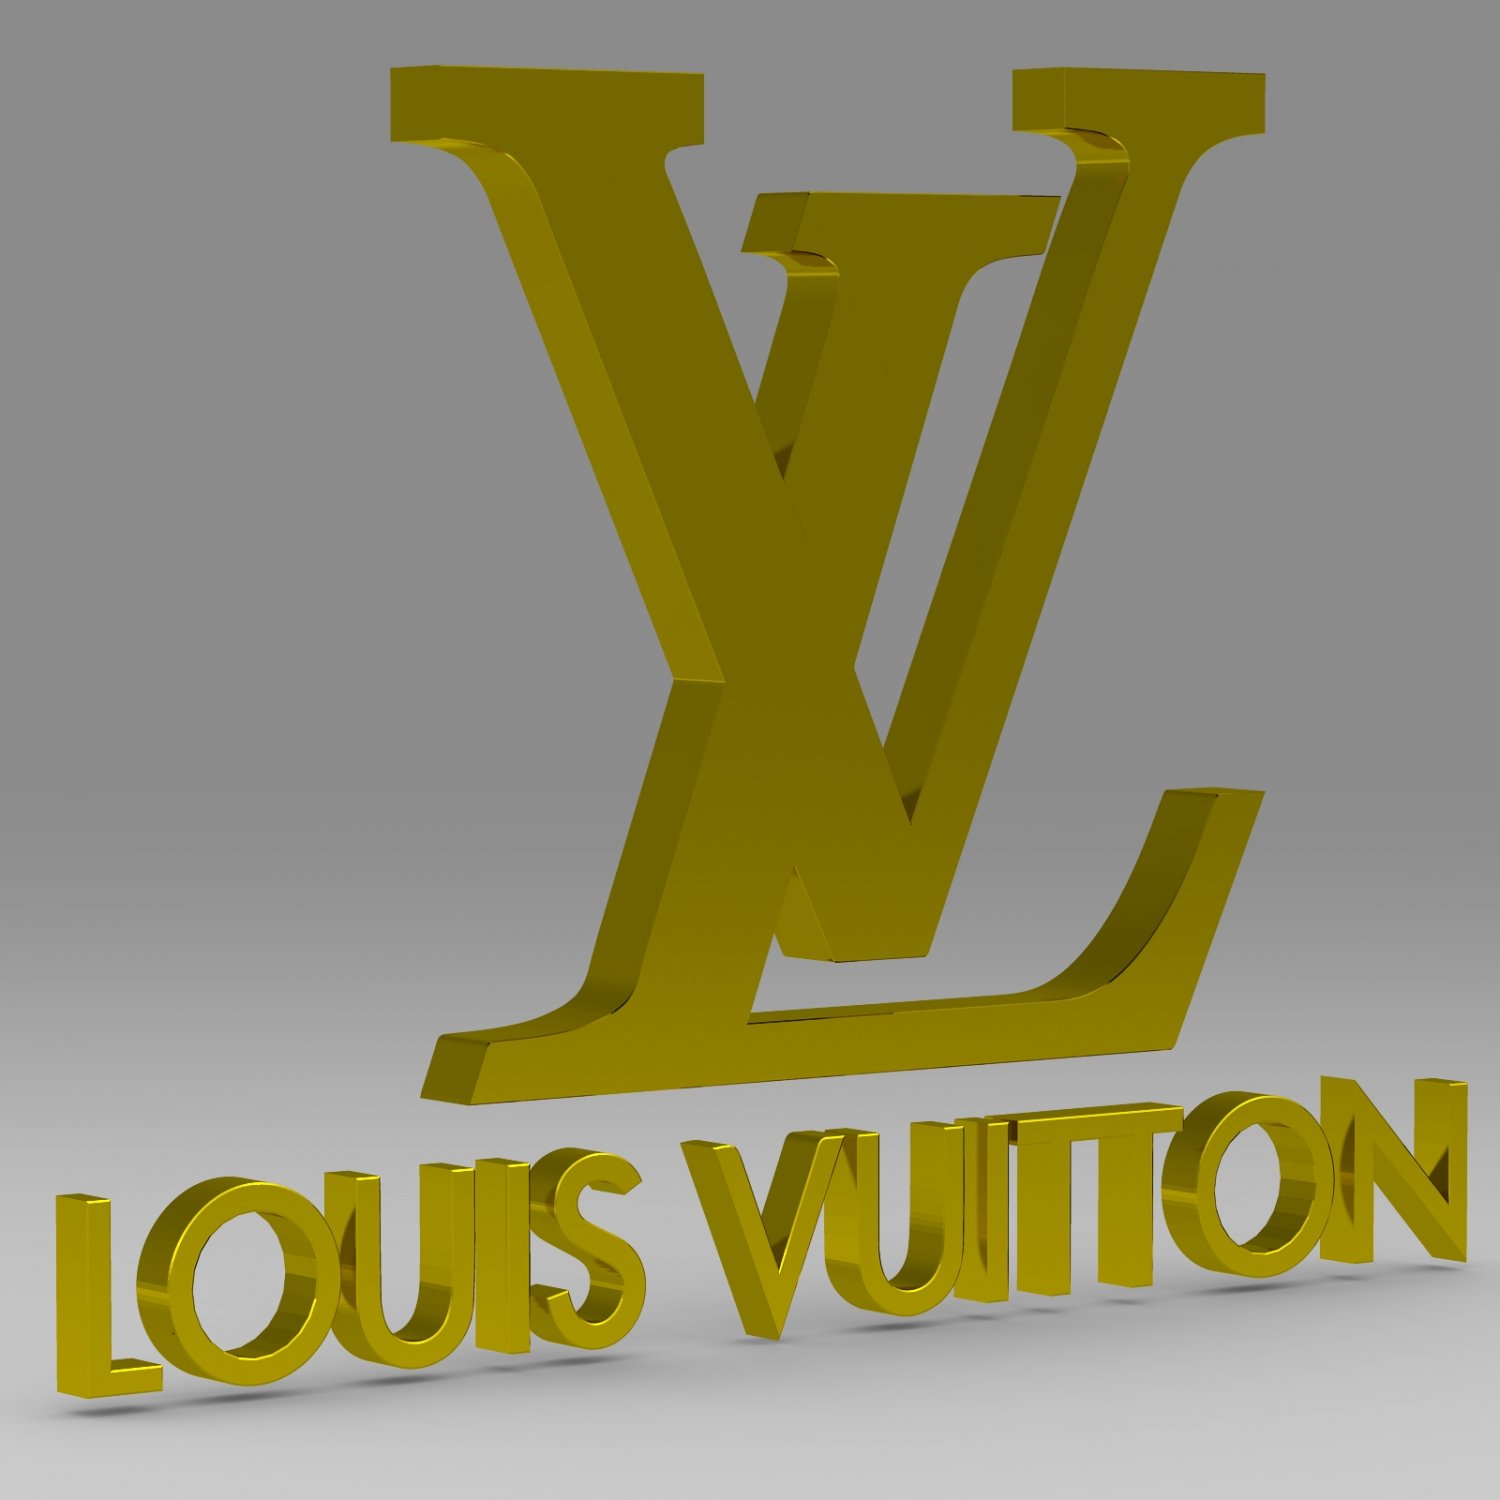 Lv logo diamond belt 3D model 3D printable